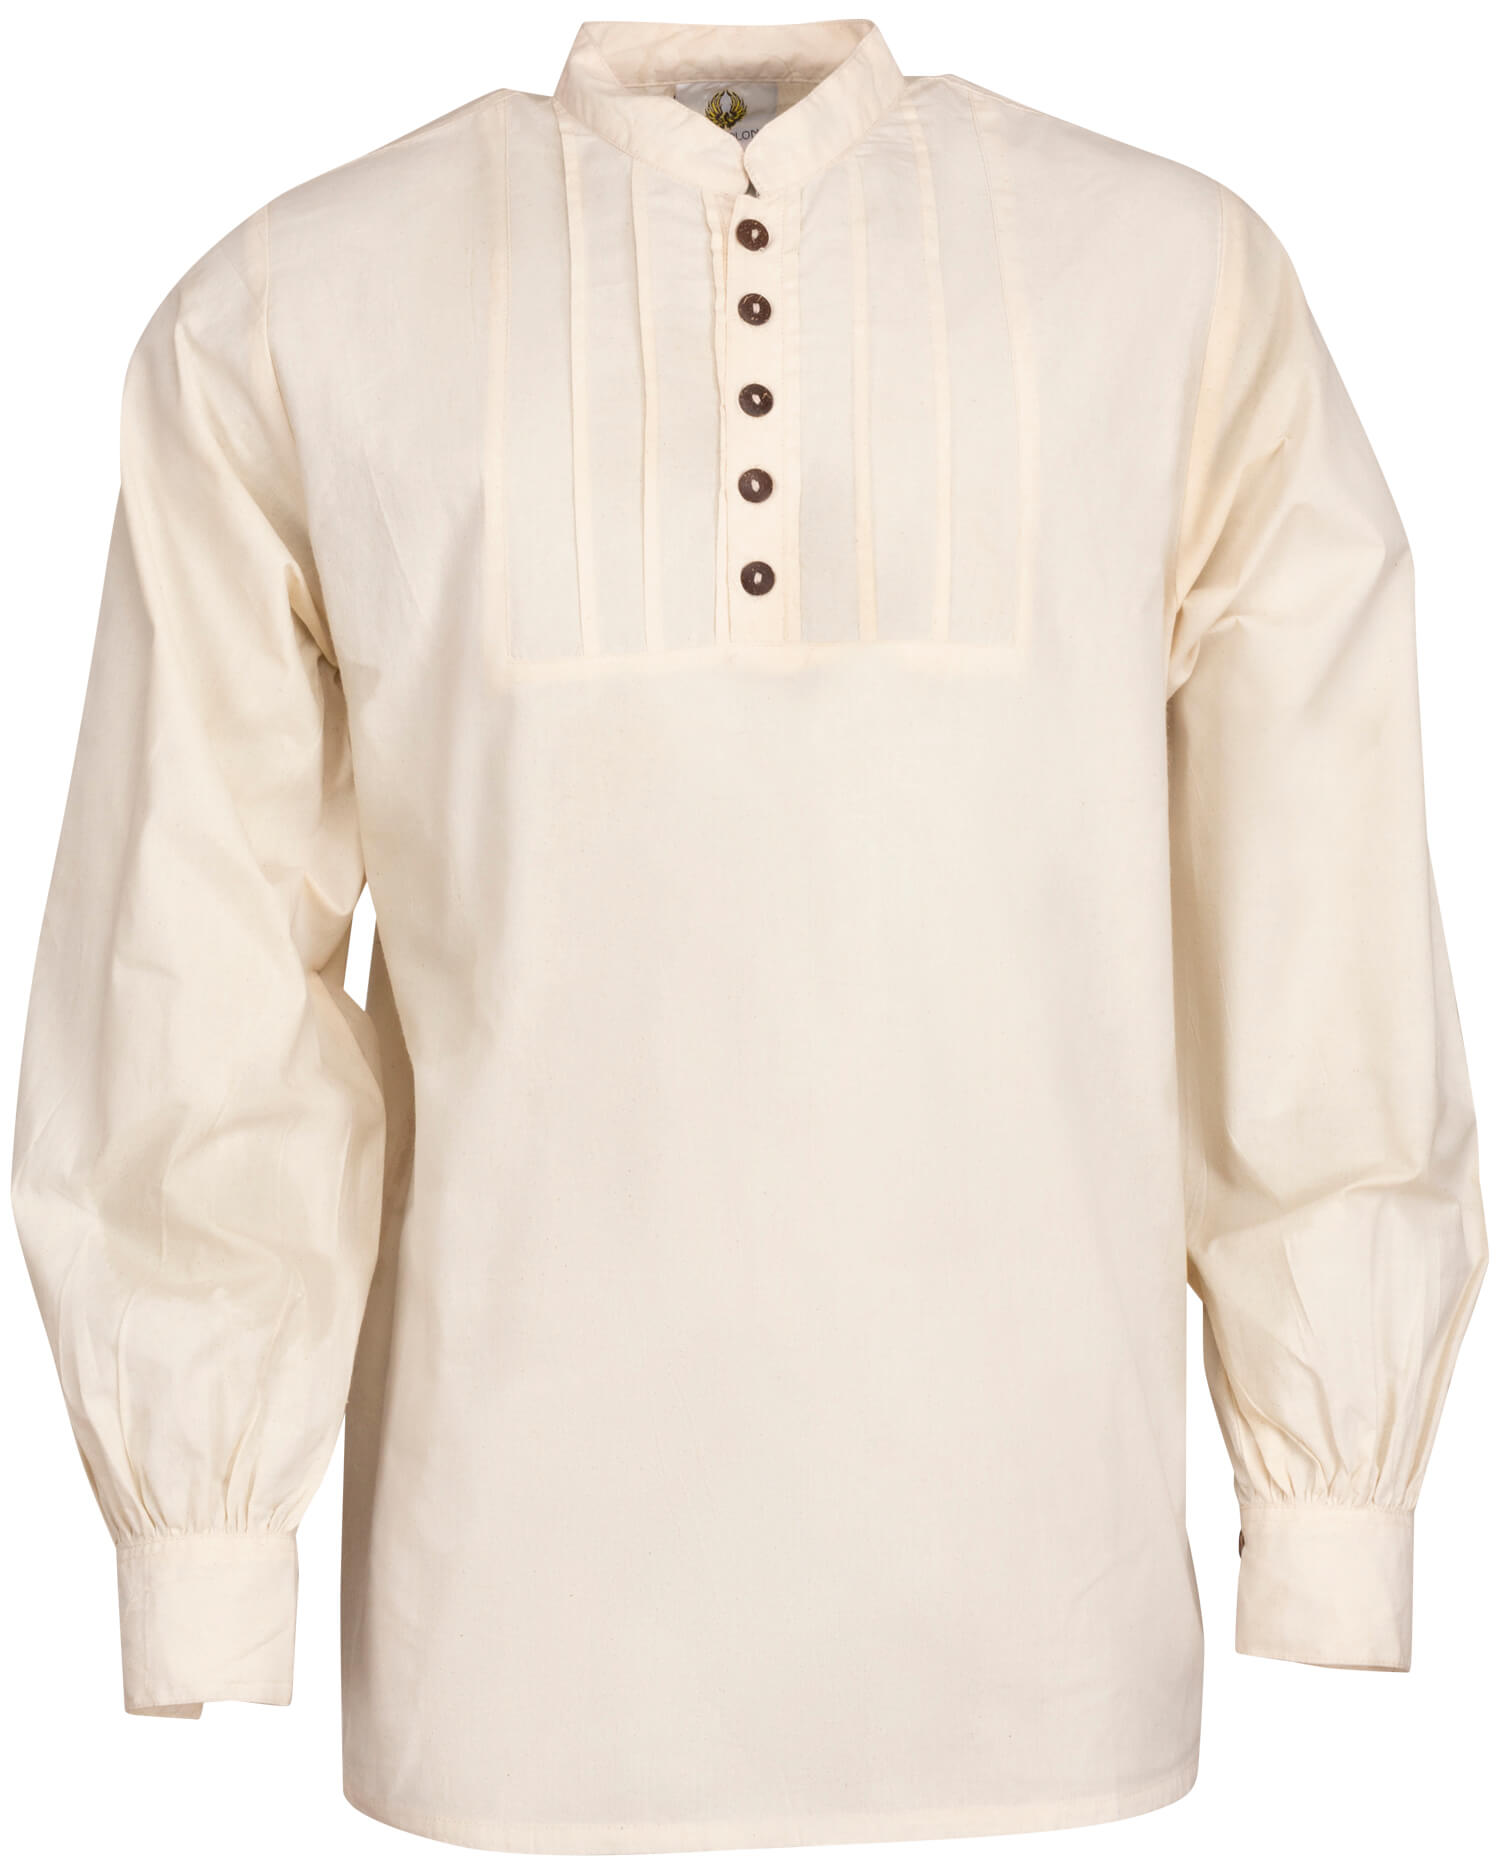 Lucious shirt light cotton